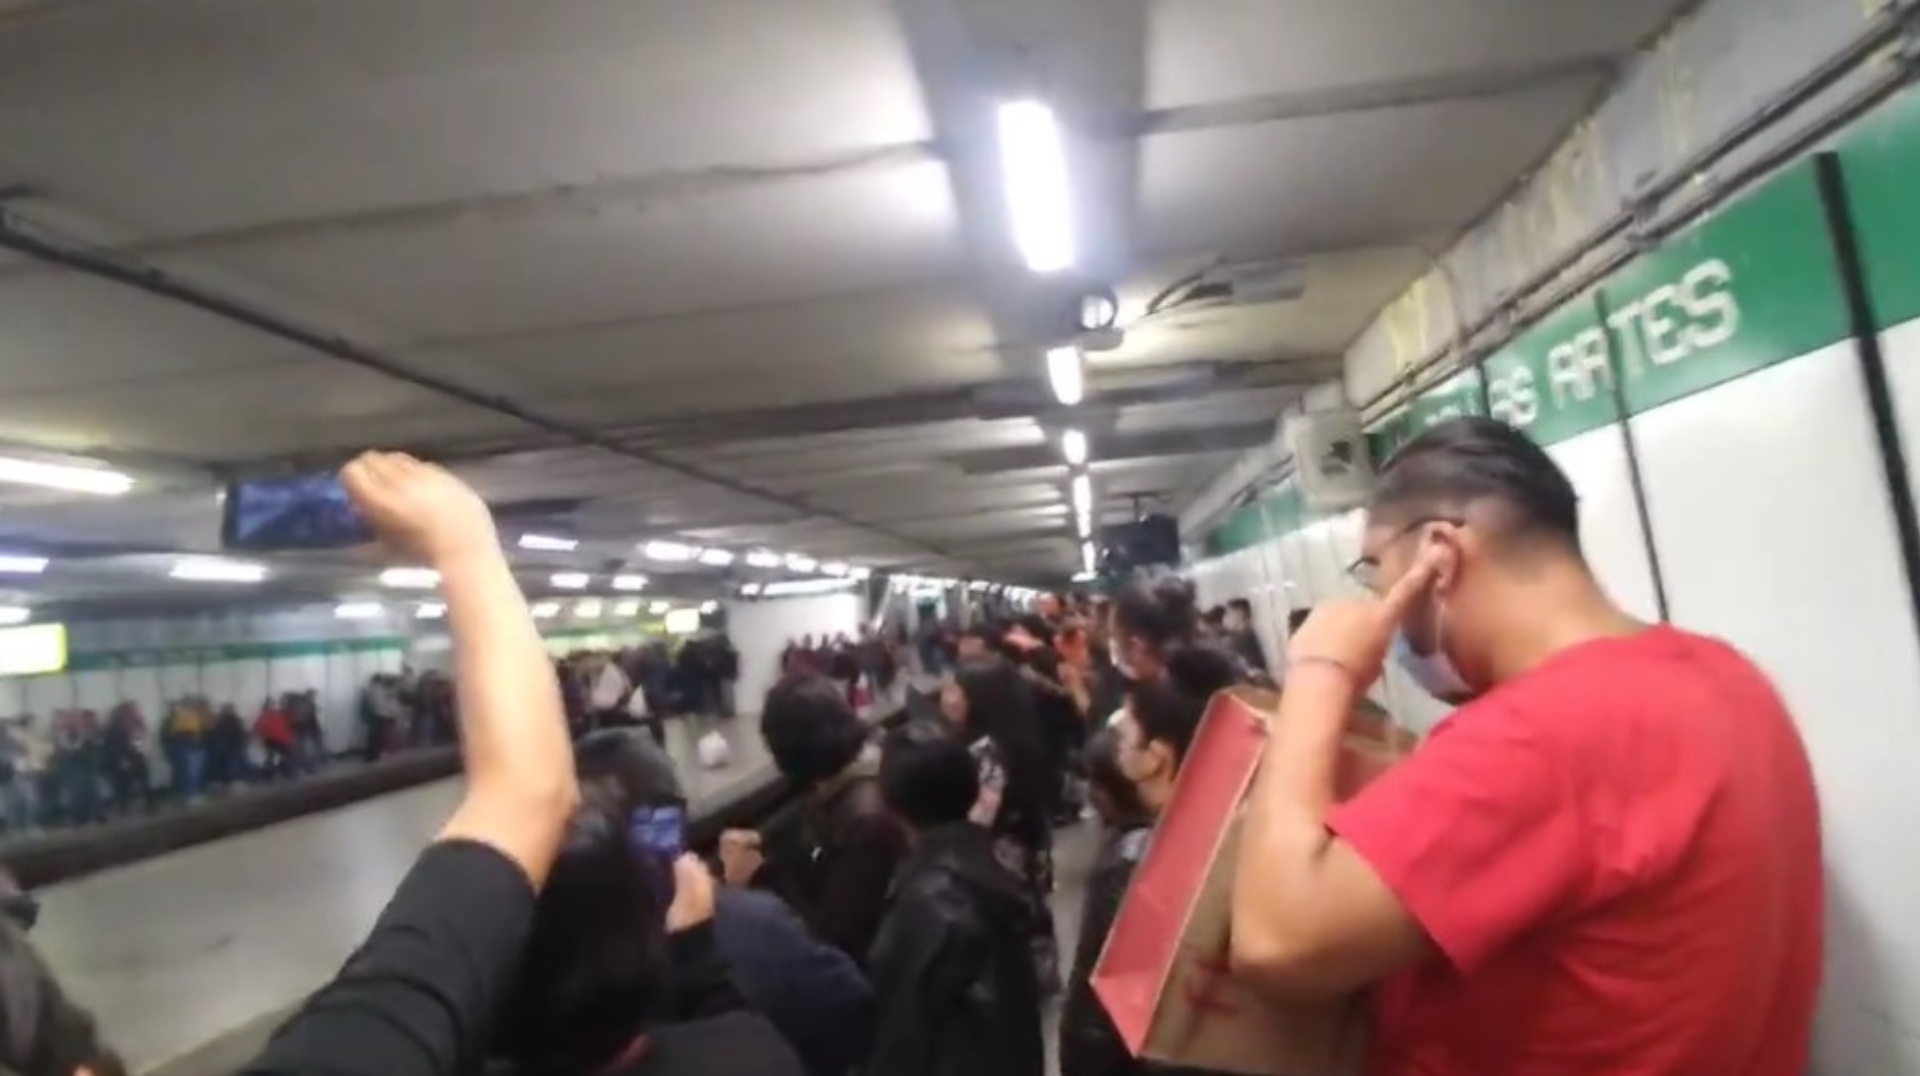 Al ritmo de “Ni tu ni nadie” usuarios amenizaron su espera en Metro Bellas Artes 